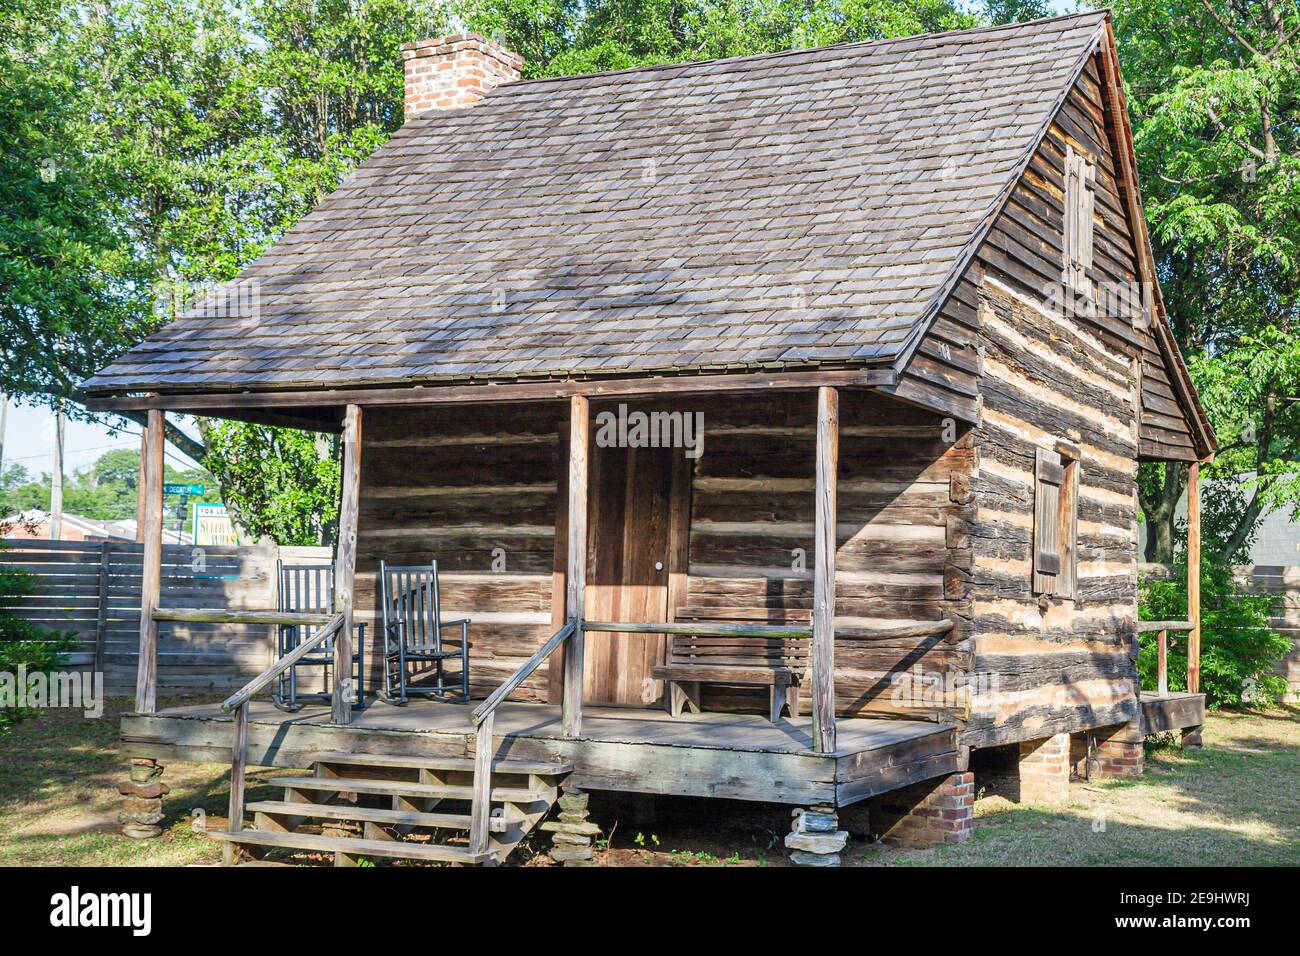 Alabama Montgomery Old Alabama Town restaurierte historische, Einzelzimmer Pioneer Blockhütte 1820er Jahre außen, Veranda Eingang, Stockfoto